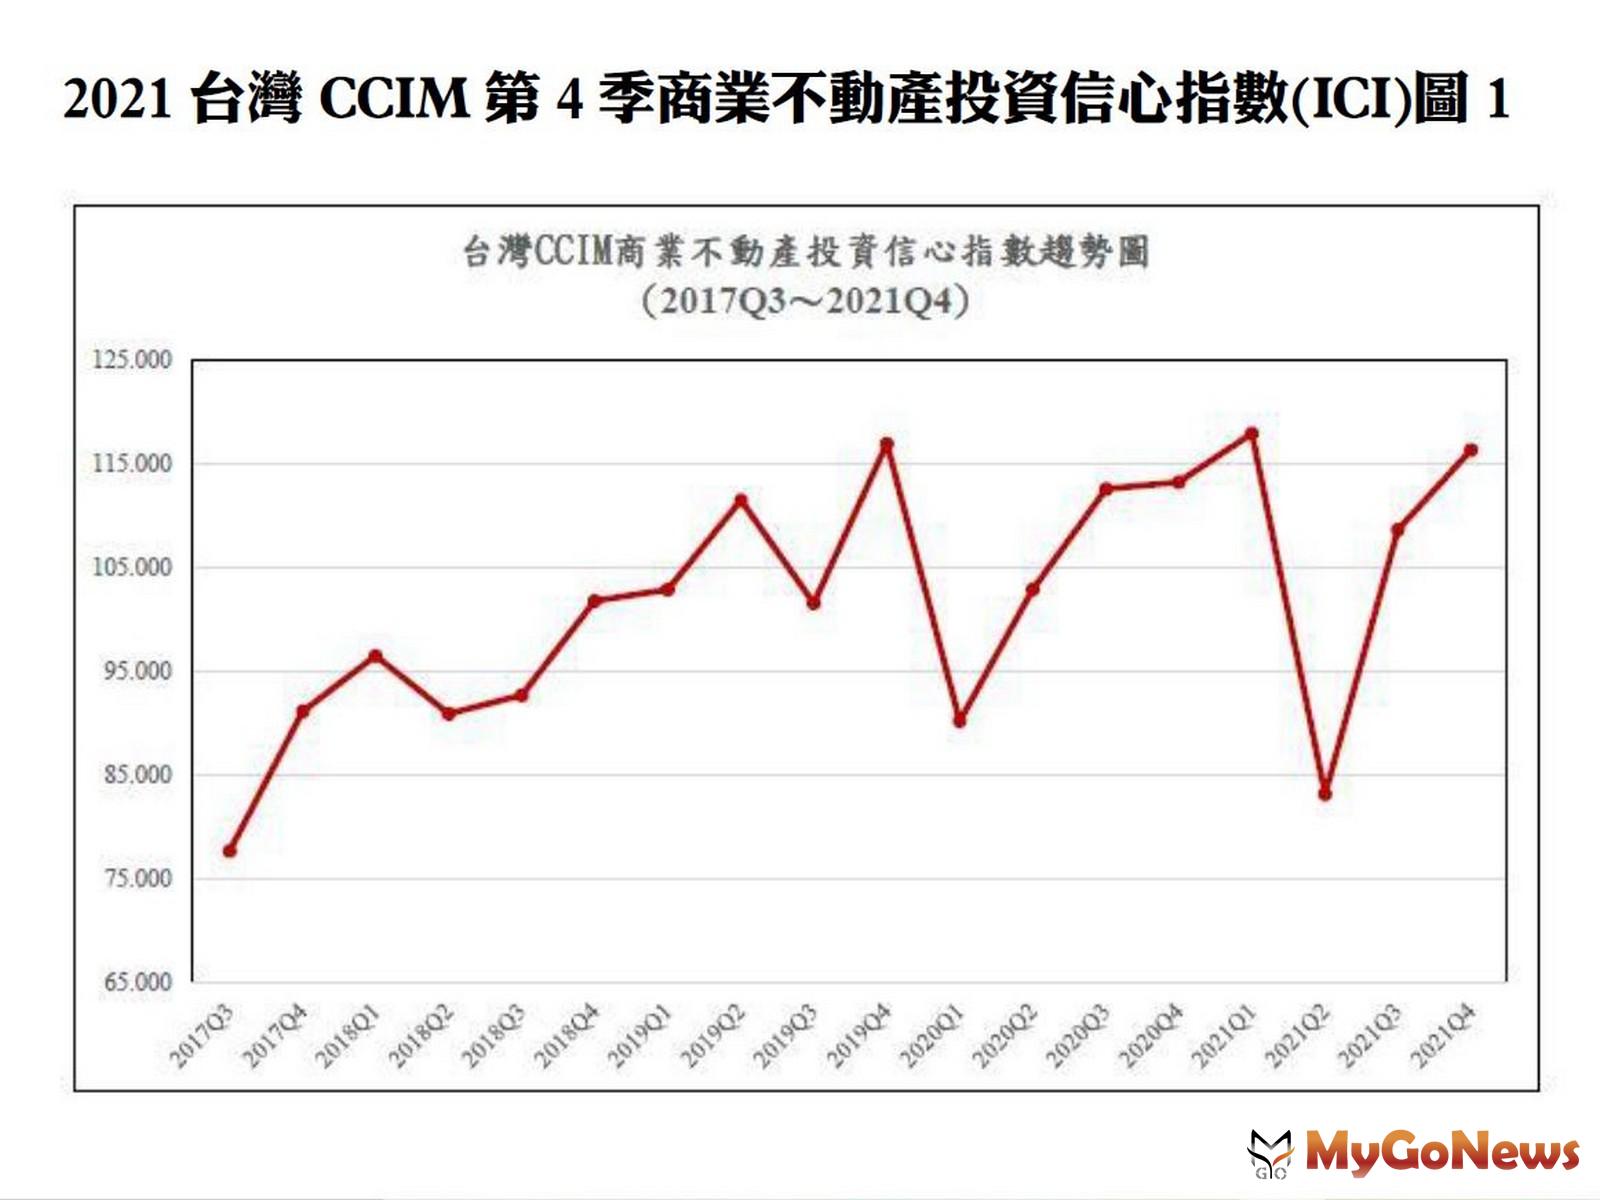 2021台灣CCIM第四季商業不動產投資信心指數(ICI)圖1 MyGoNews房地產新聞 趨勢報導